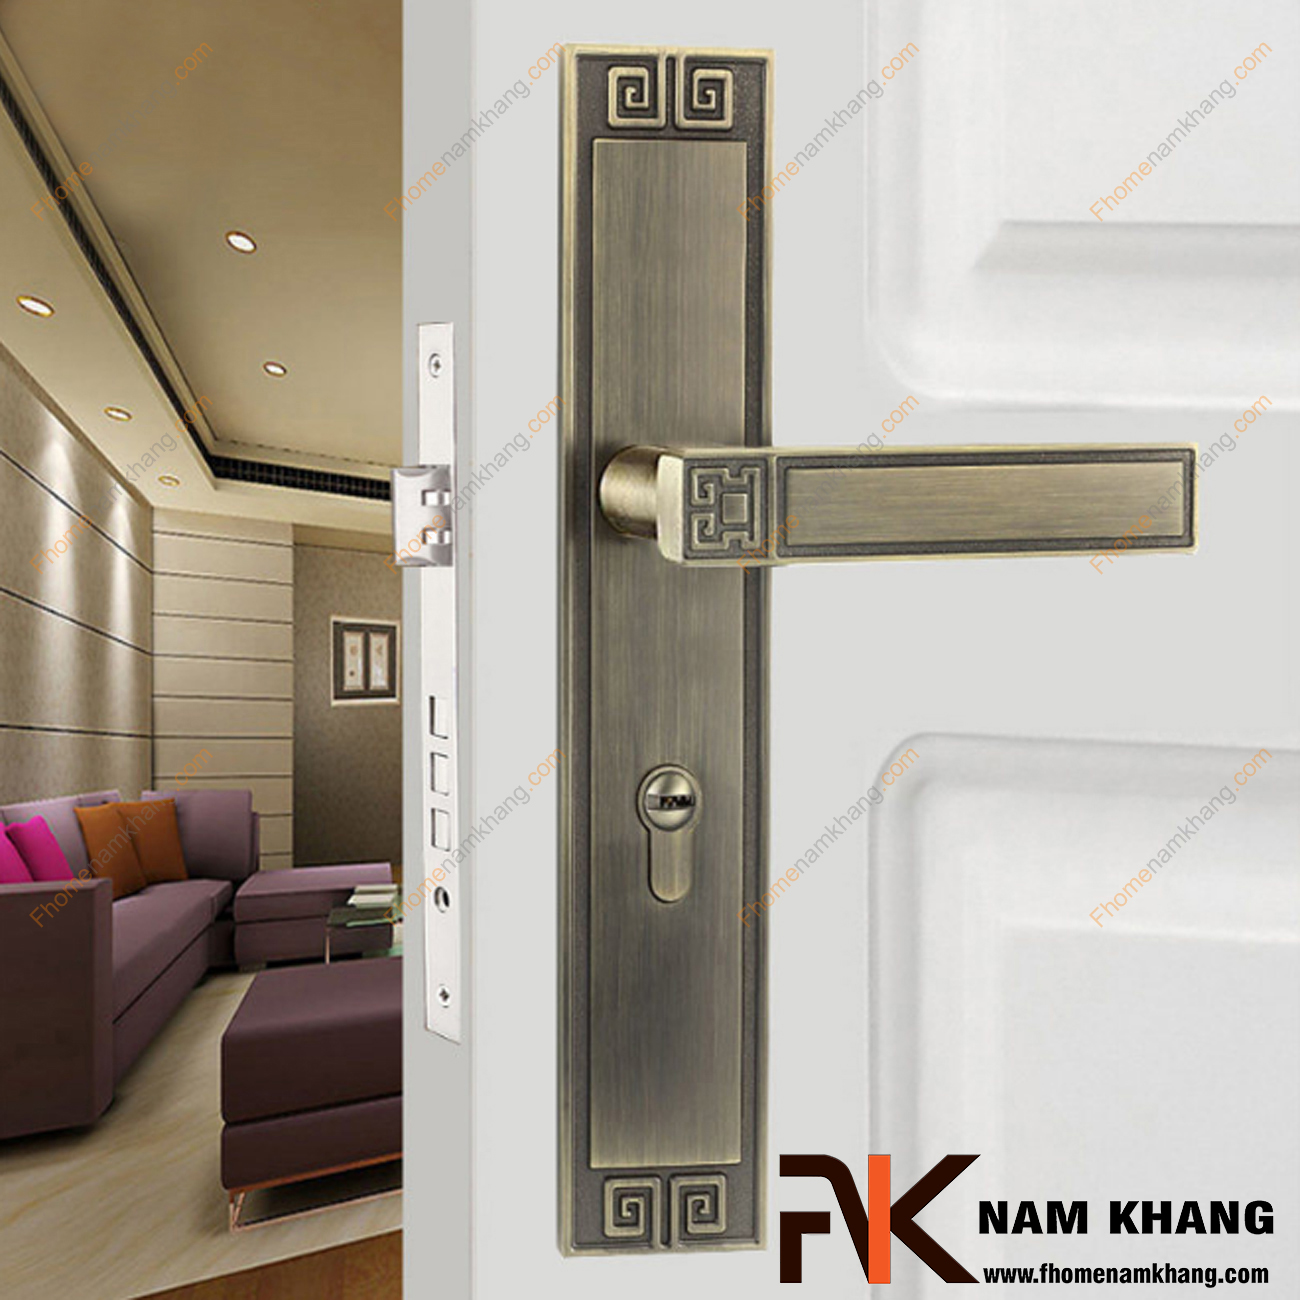 Khóa cửa chính dạng ốp vuông màu đồng vàng đen NK560L-BCF là bộ khóa cửa dành chi các dạng cửa chính lớn, cao cấp, cửa 2 cánh hoặc 4 cánh.